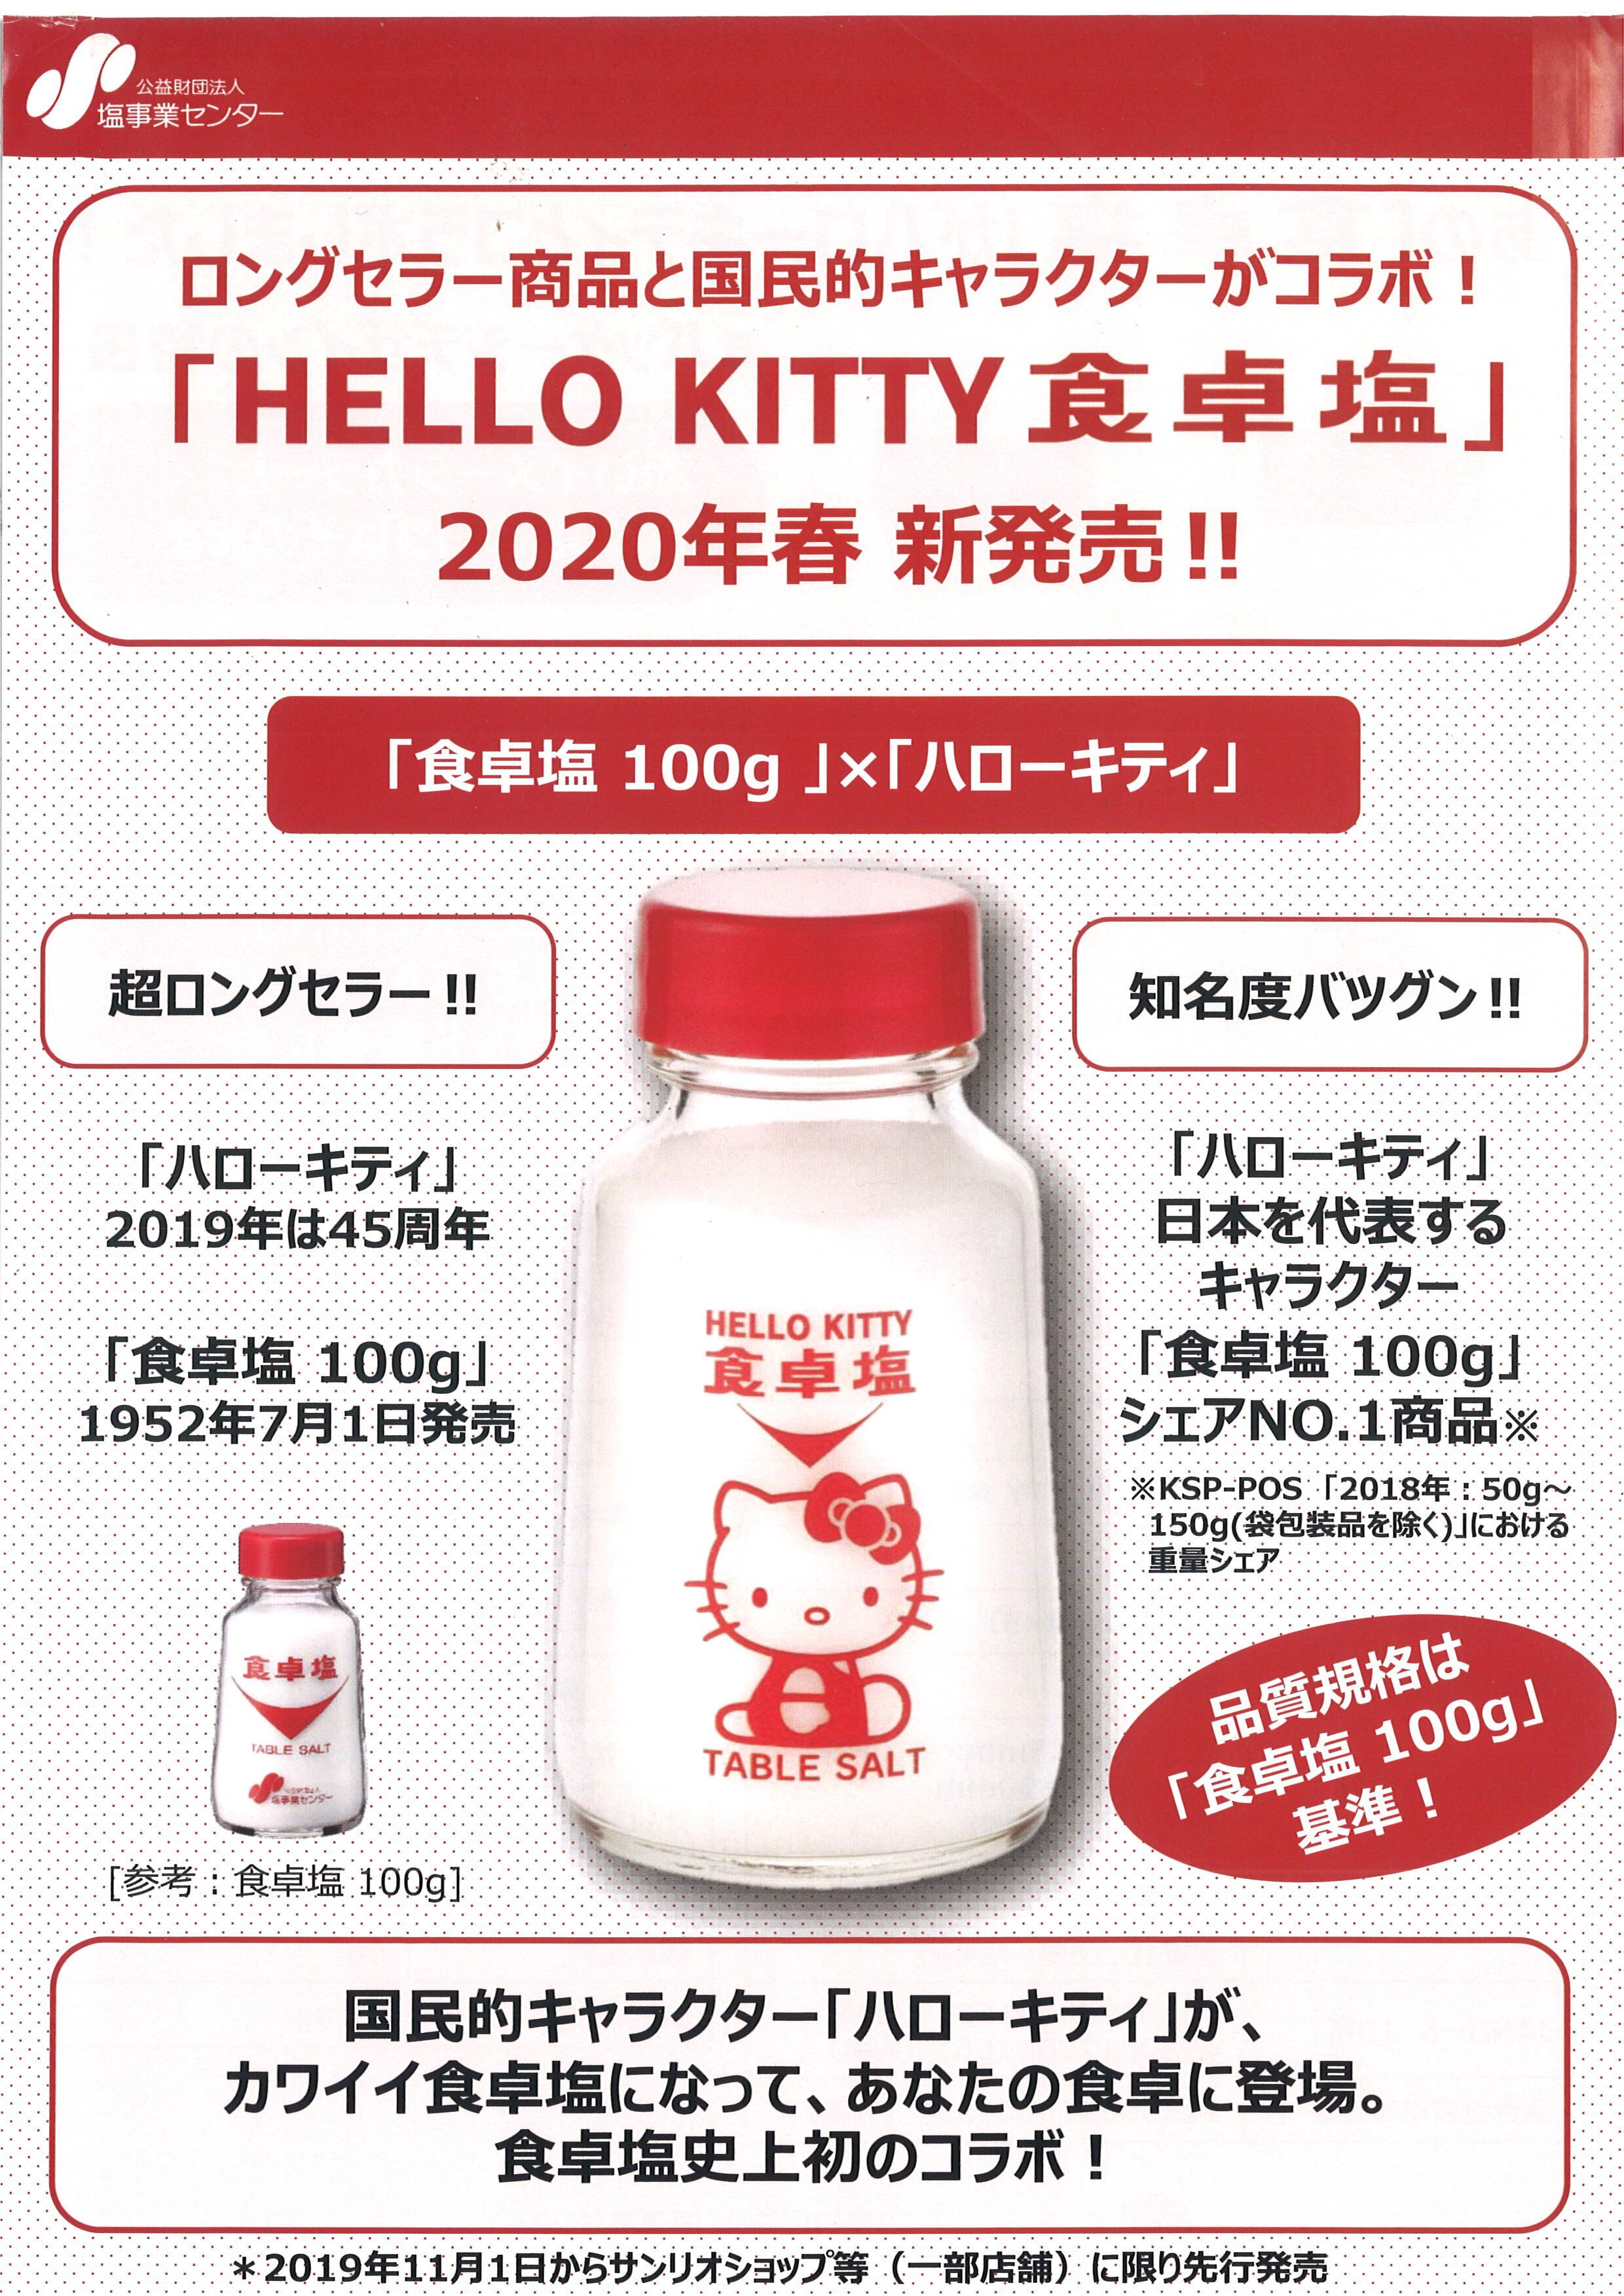 HELLO KITTY 食卓塩100g